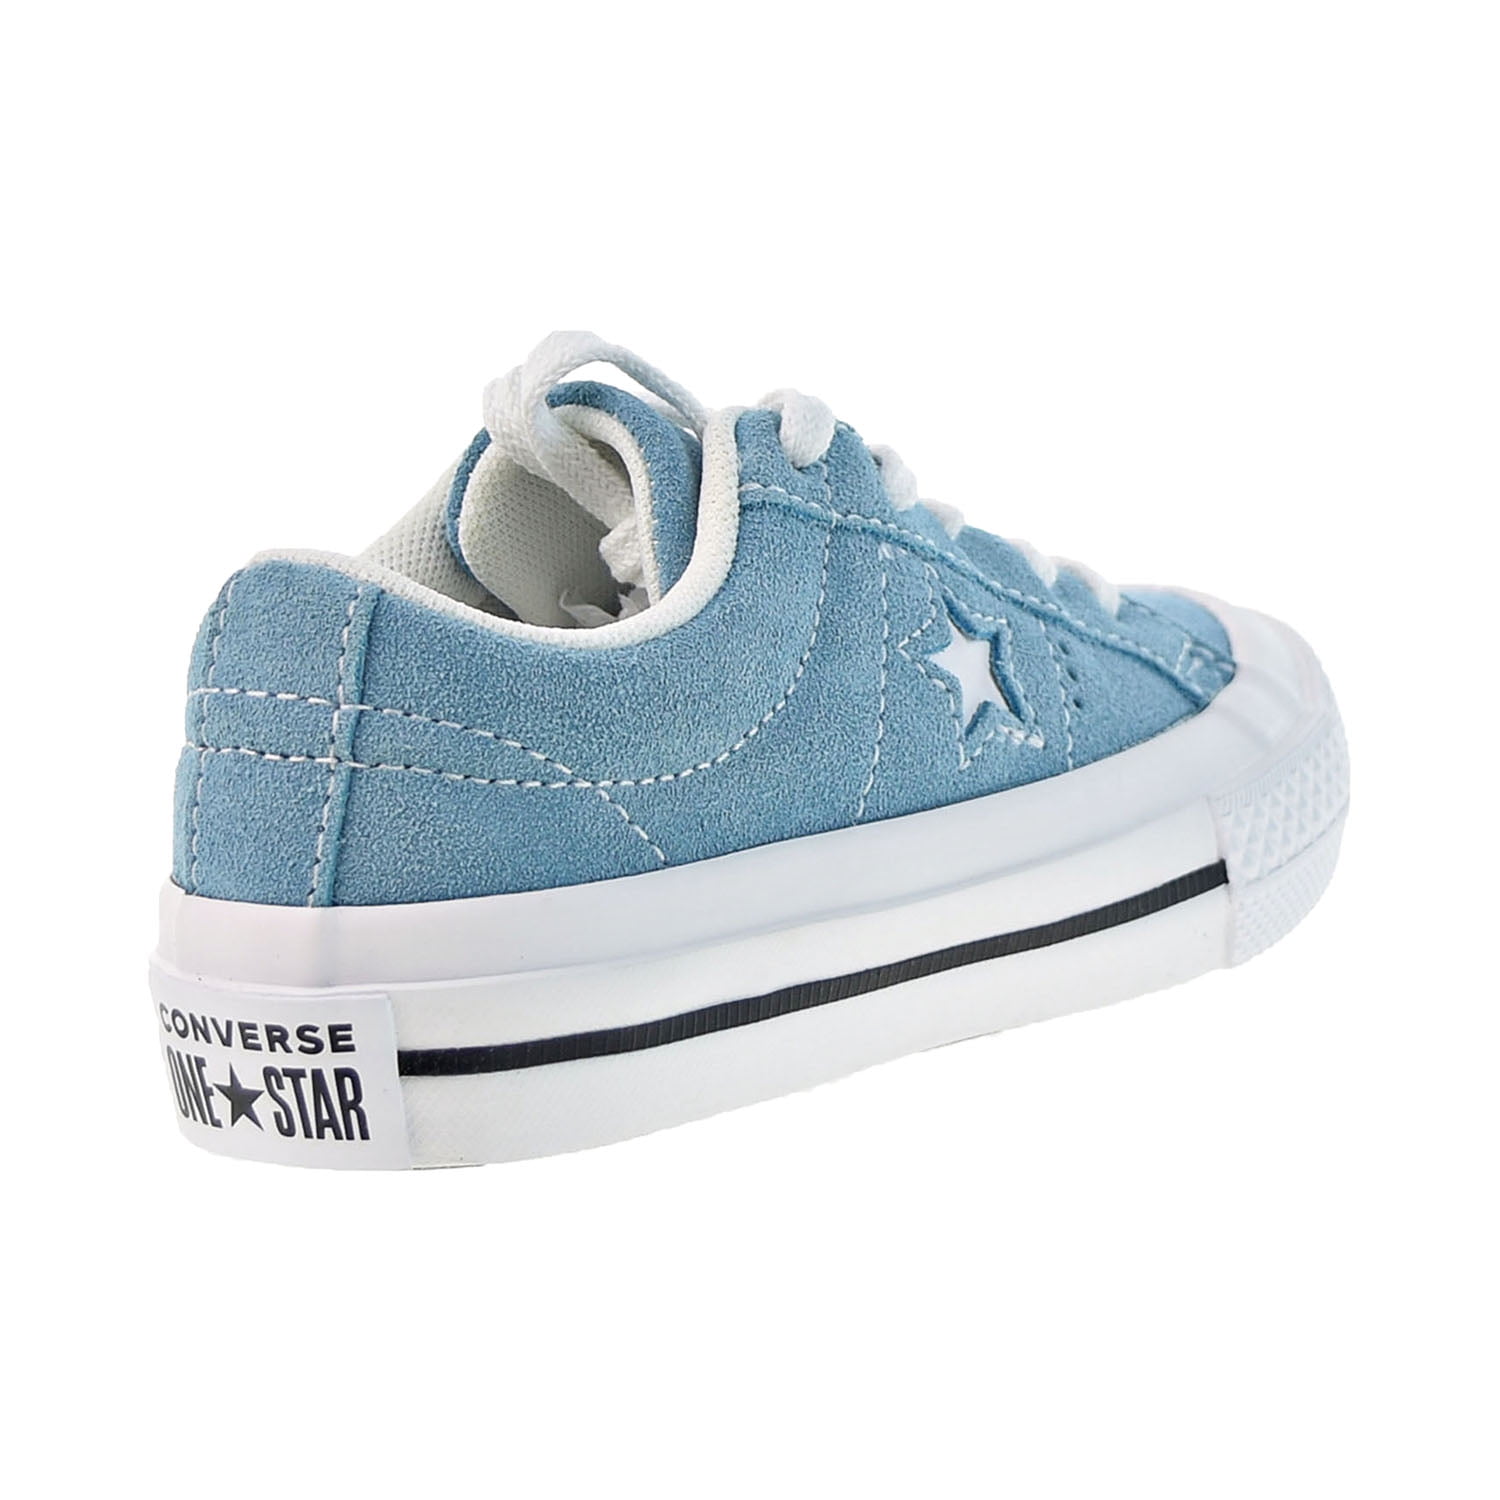 Converse One Oxford Little Kids' Shoes Shoreline Blue 361803c - Walmart.com